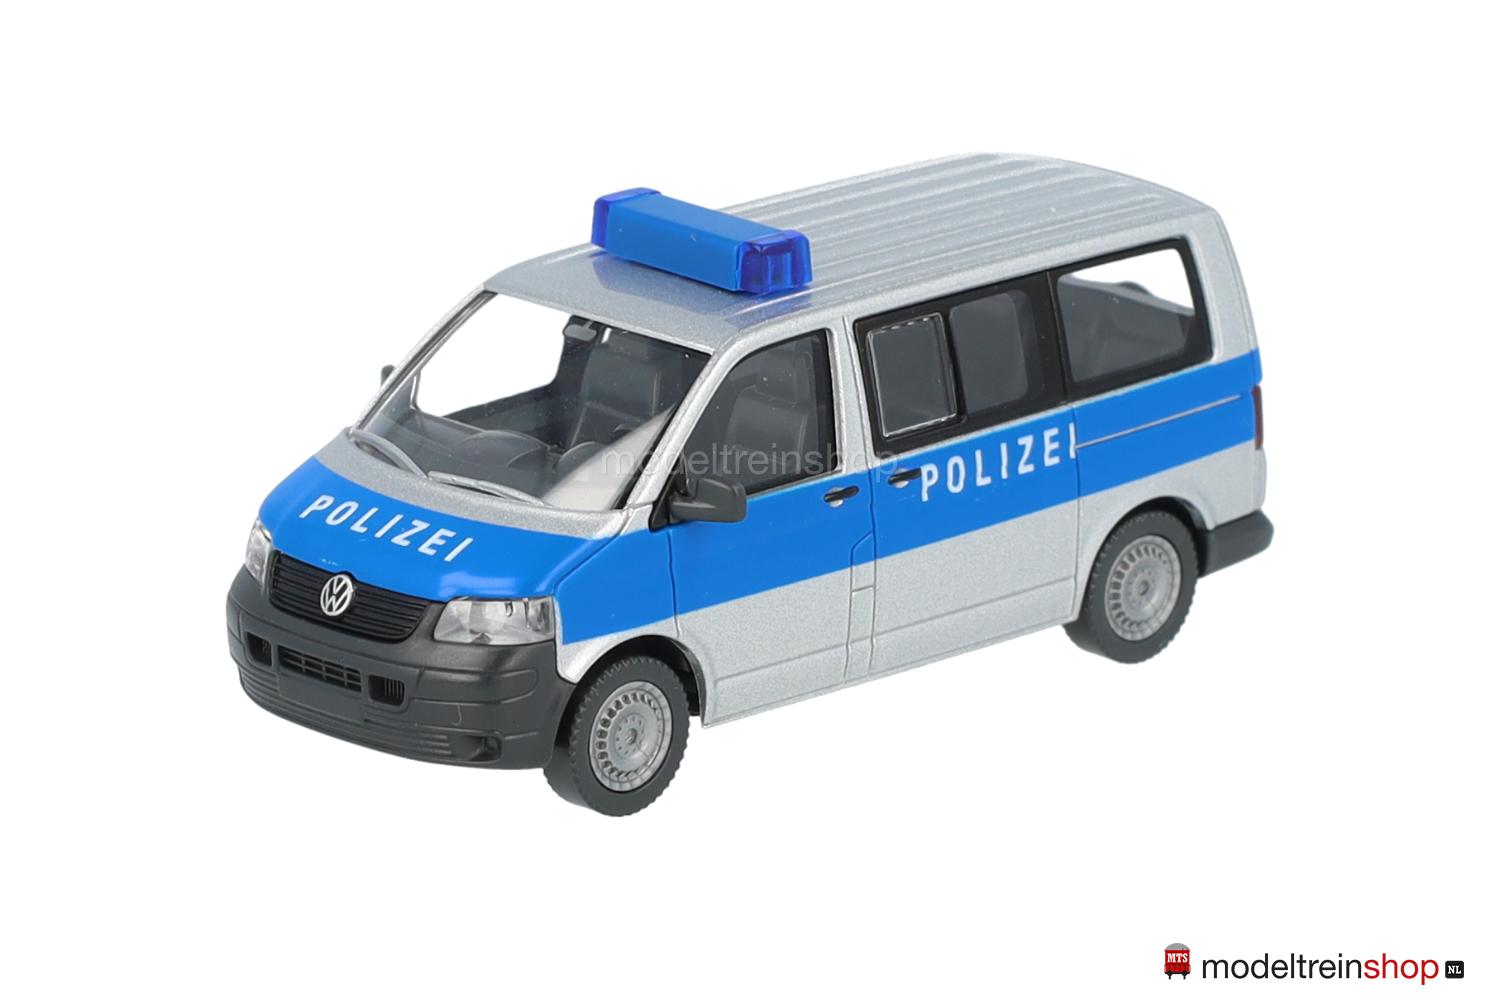 Wiking H0 1042330 Volkswagen T5 Polizei - Politie - Modeltreinshop